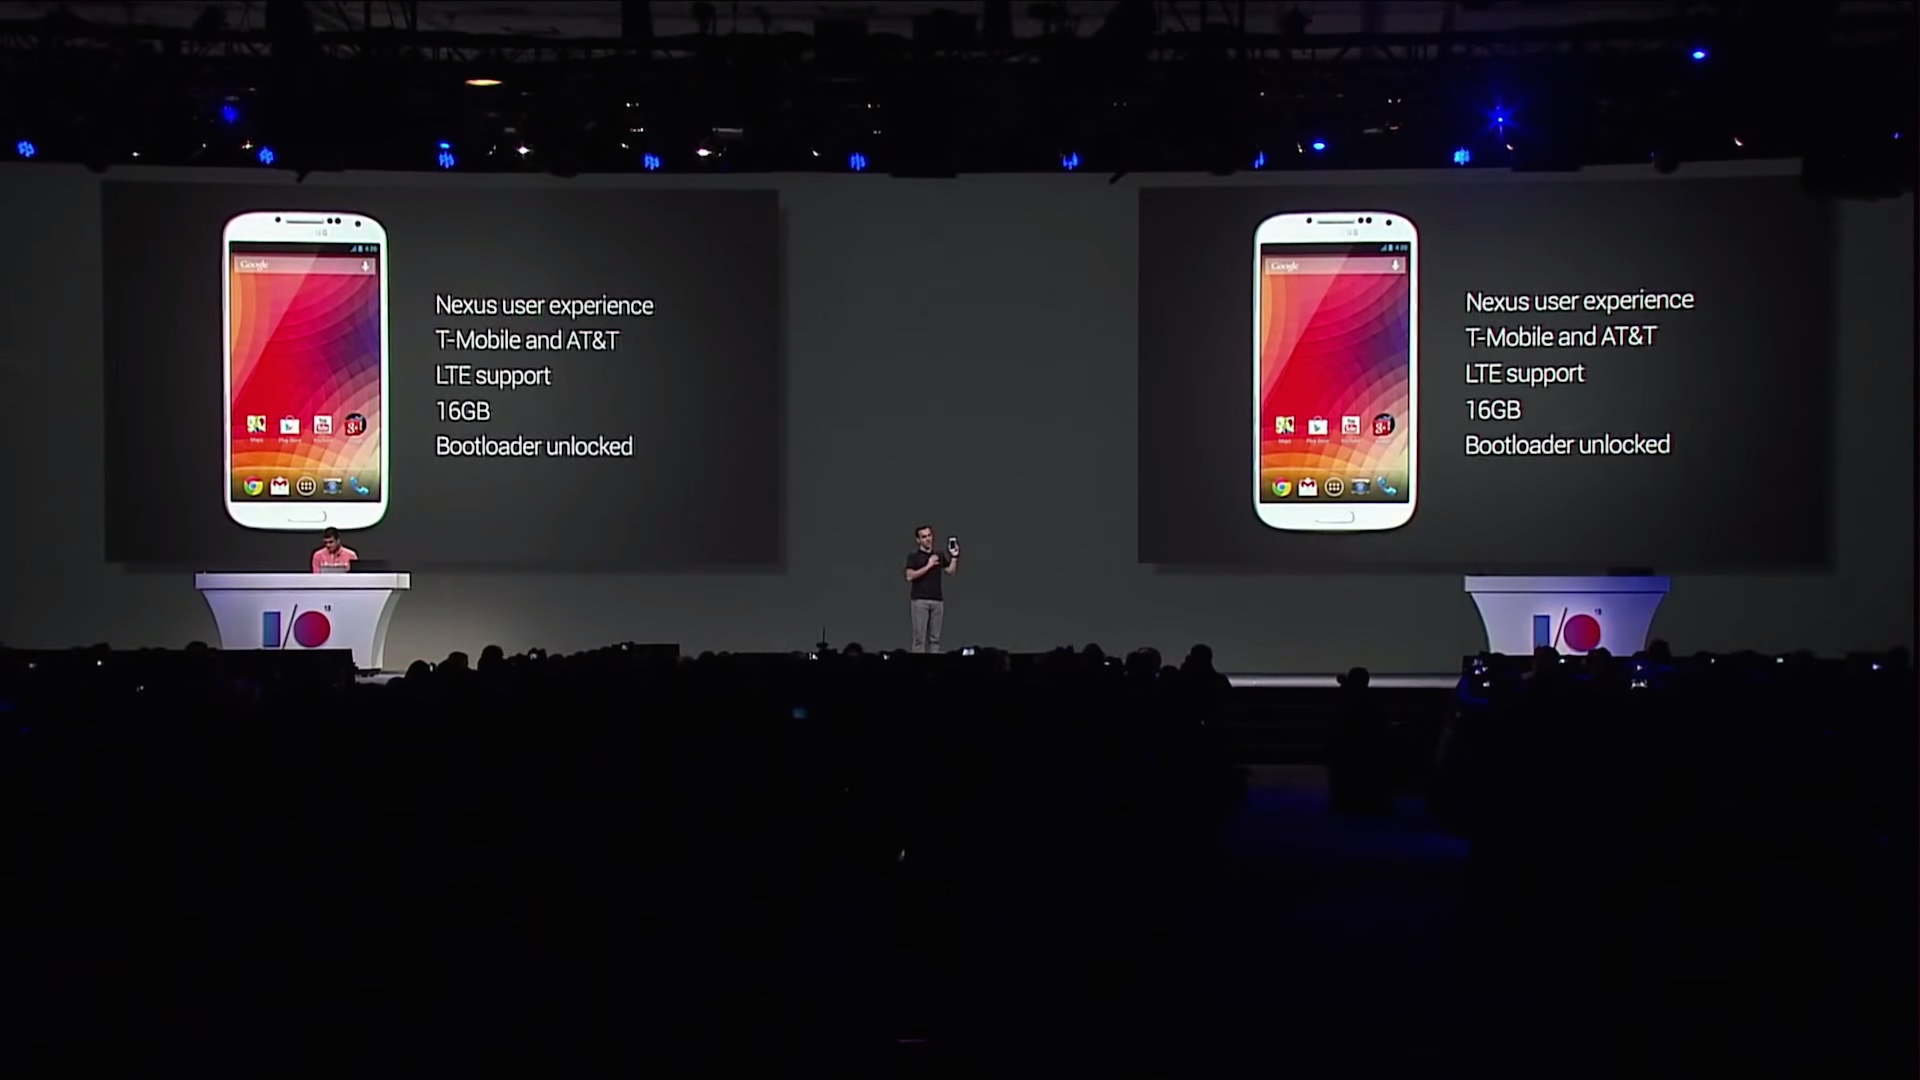 Nhìn lại những chiếc điện thoại Google Play Edition mới thấy tại sao chúng lại thảm bại như vậy - Ảnh 1.